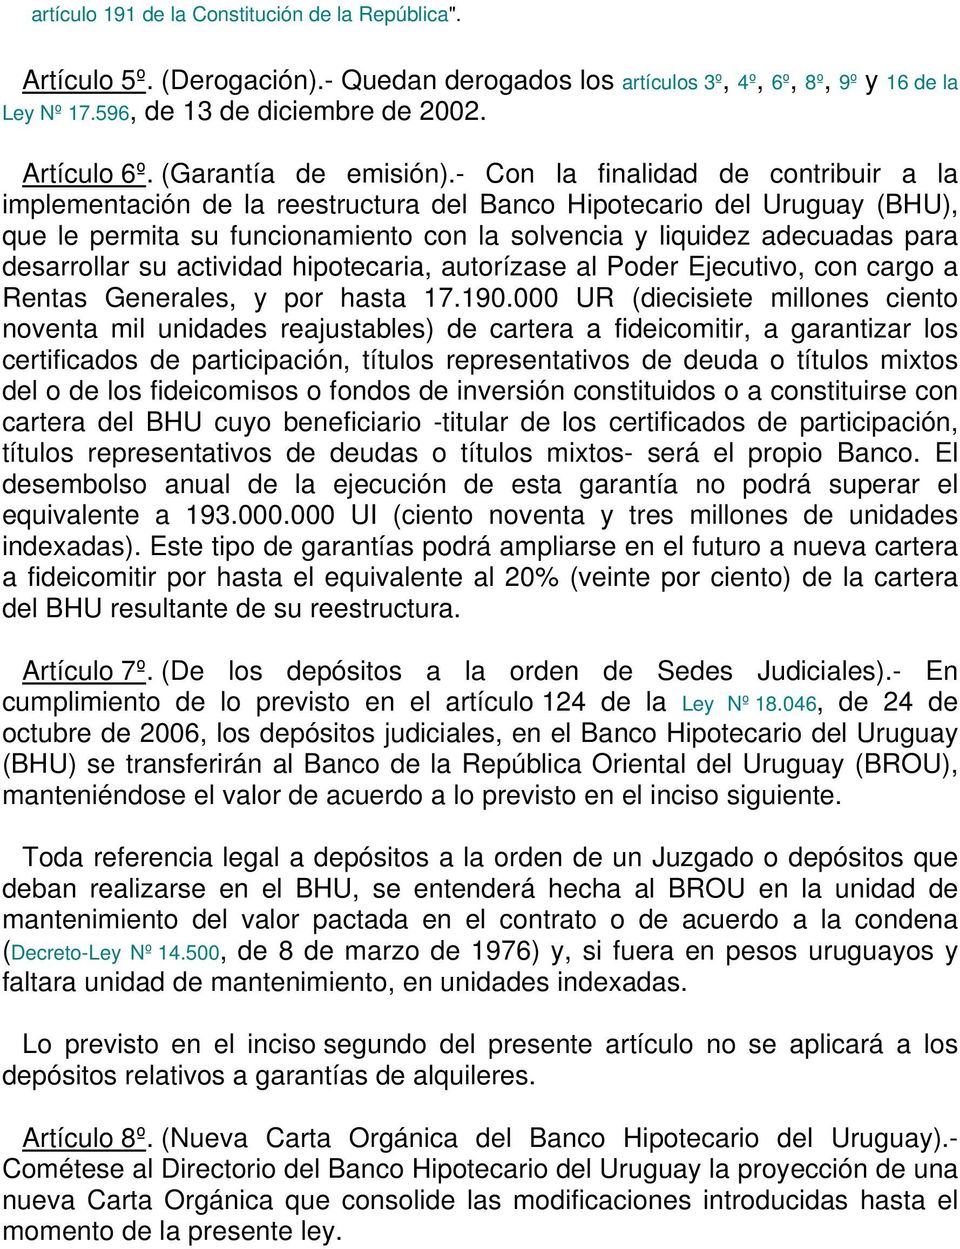 - Con la finalidad de contribuir a la implementación de la reestructura del Banco Hipotecario del Uruguay (BHU), que le permita su funcionamiento con la solvencia y liquidez adecuadas para